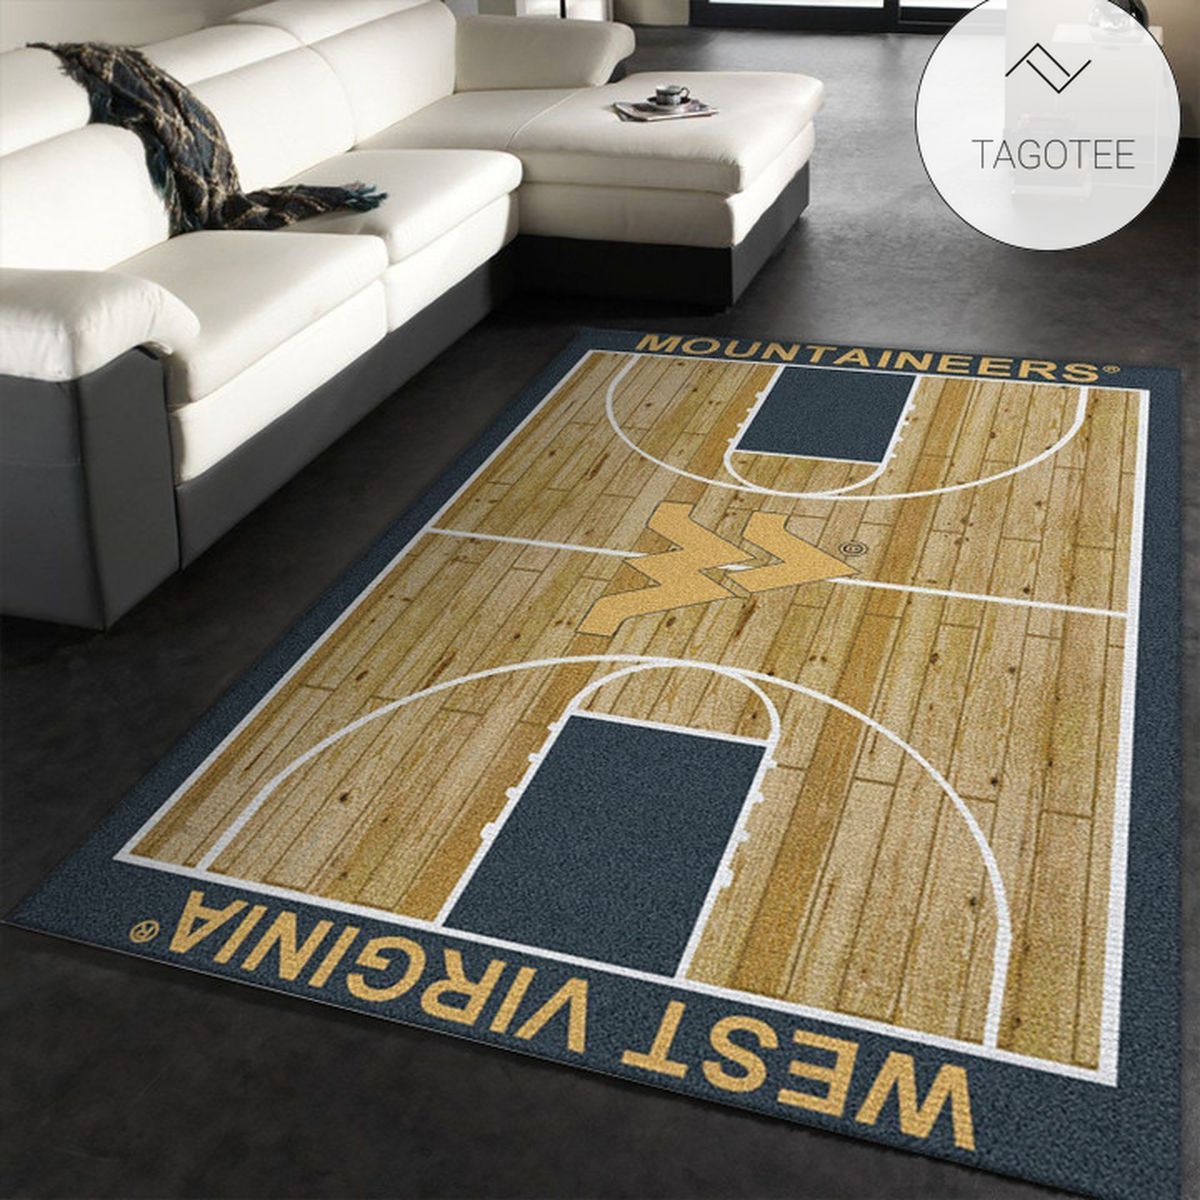 College Home Court West Virginia Basketball Team Logo Area Rug Living Room Rug Home Decor Floor Decor